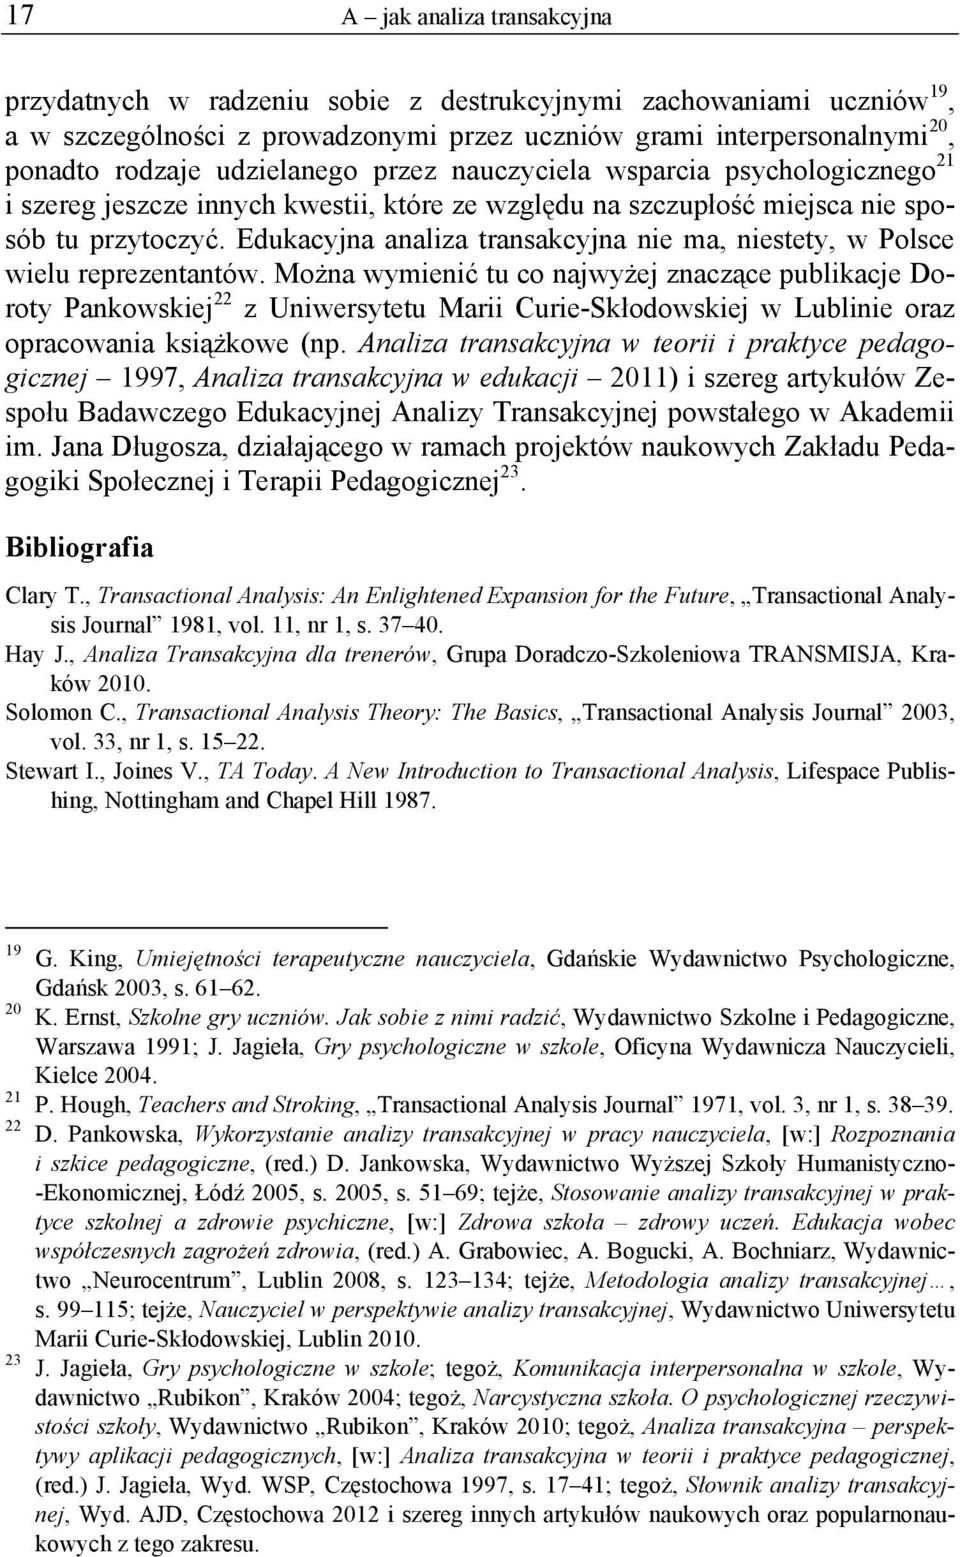 Jarosław Jagieła. Edukacyjna Analiza Transakcyjna w kilku odsłonach - PDF  Free Download